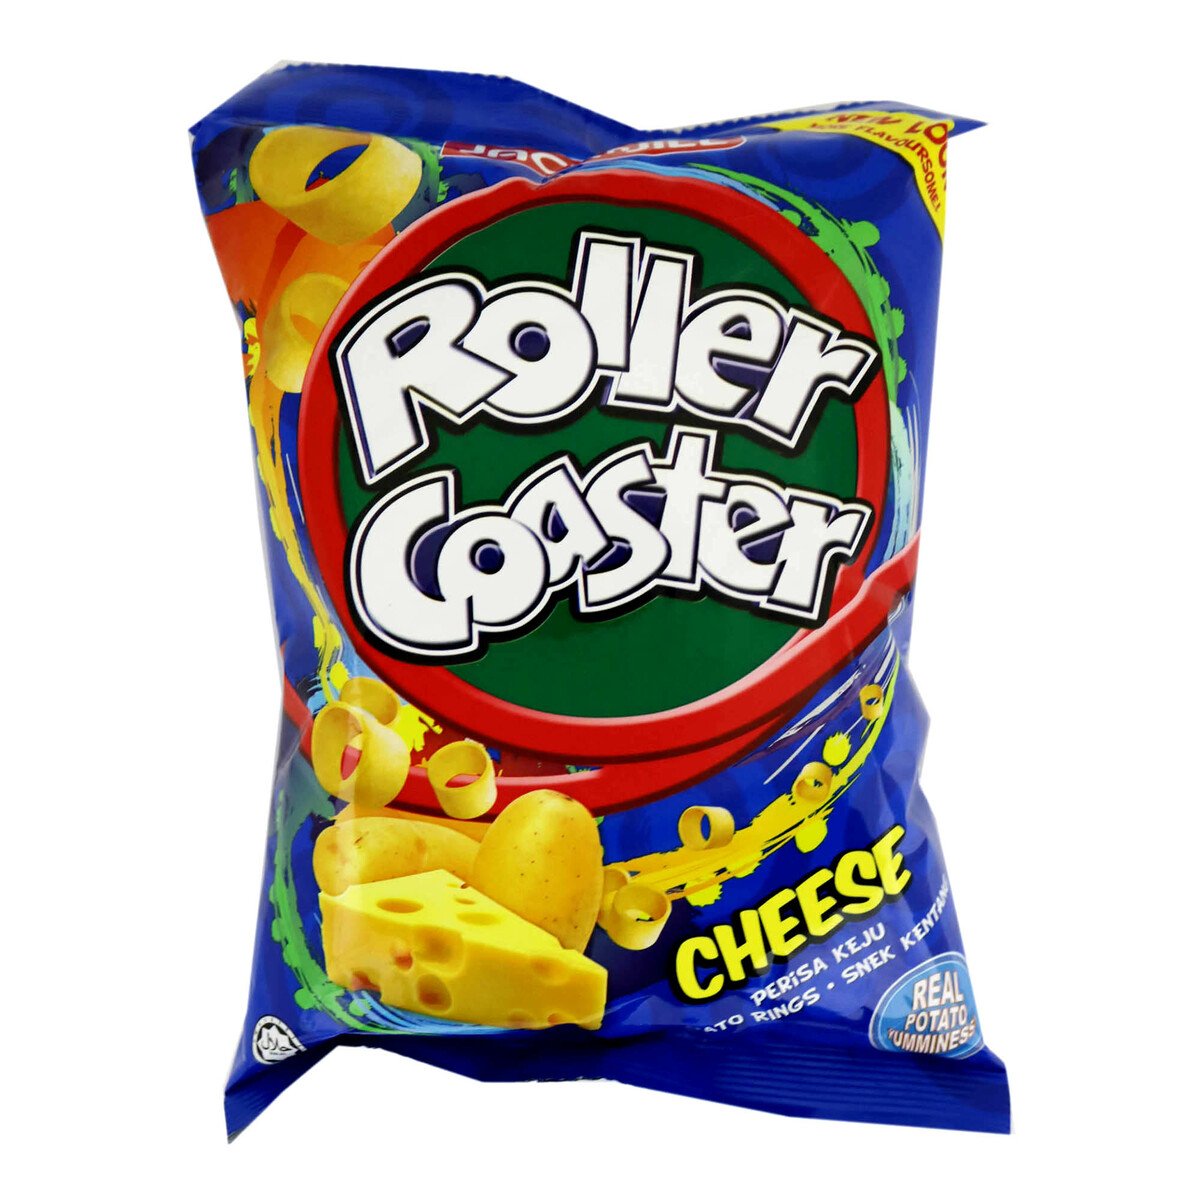 Jack & Jill Roller coaster Cheese 60g